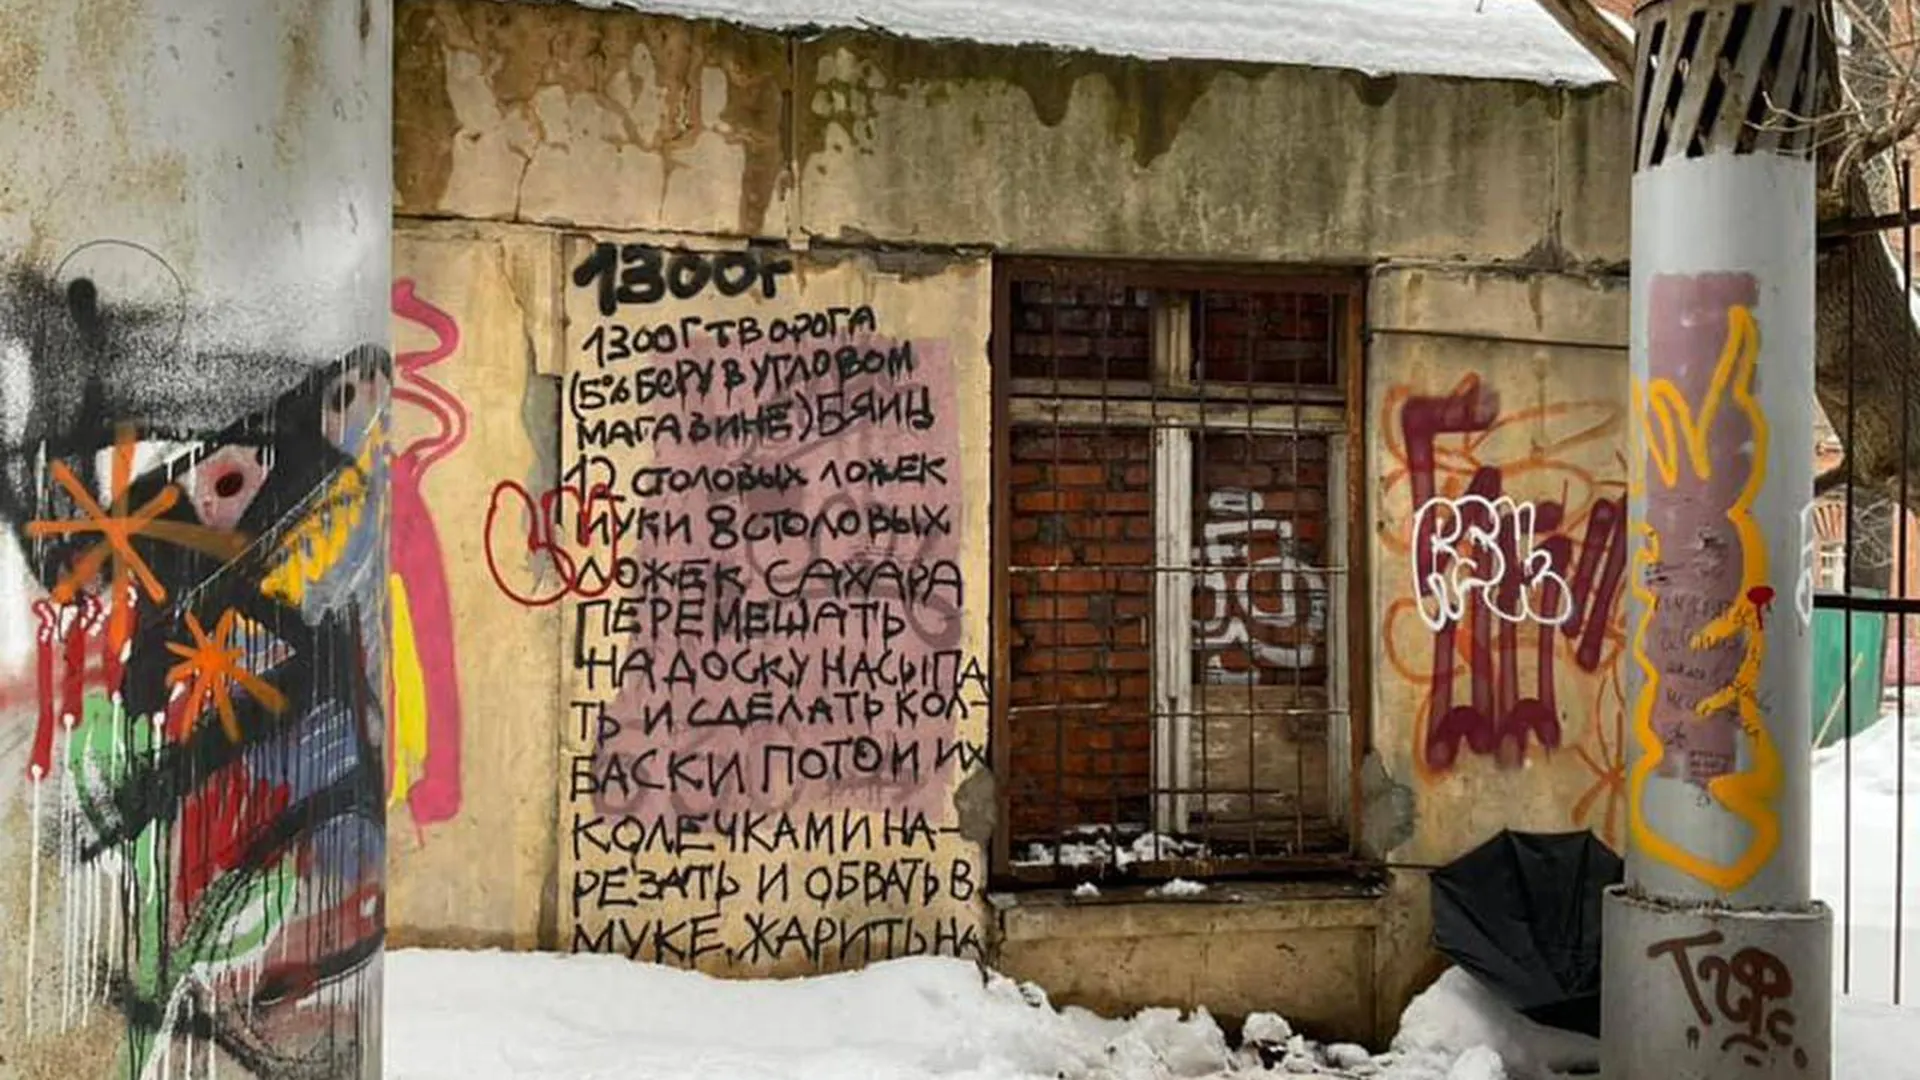 Граффити с рецептом творожных колец обнаружили на стене дома в Москве